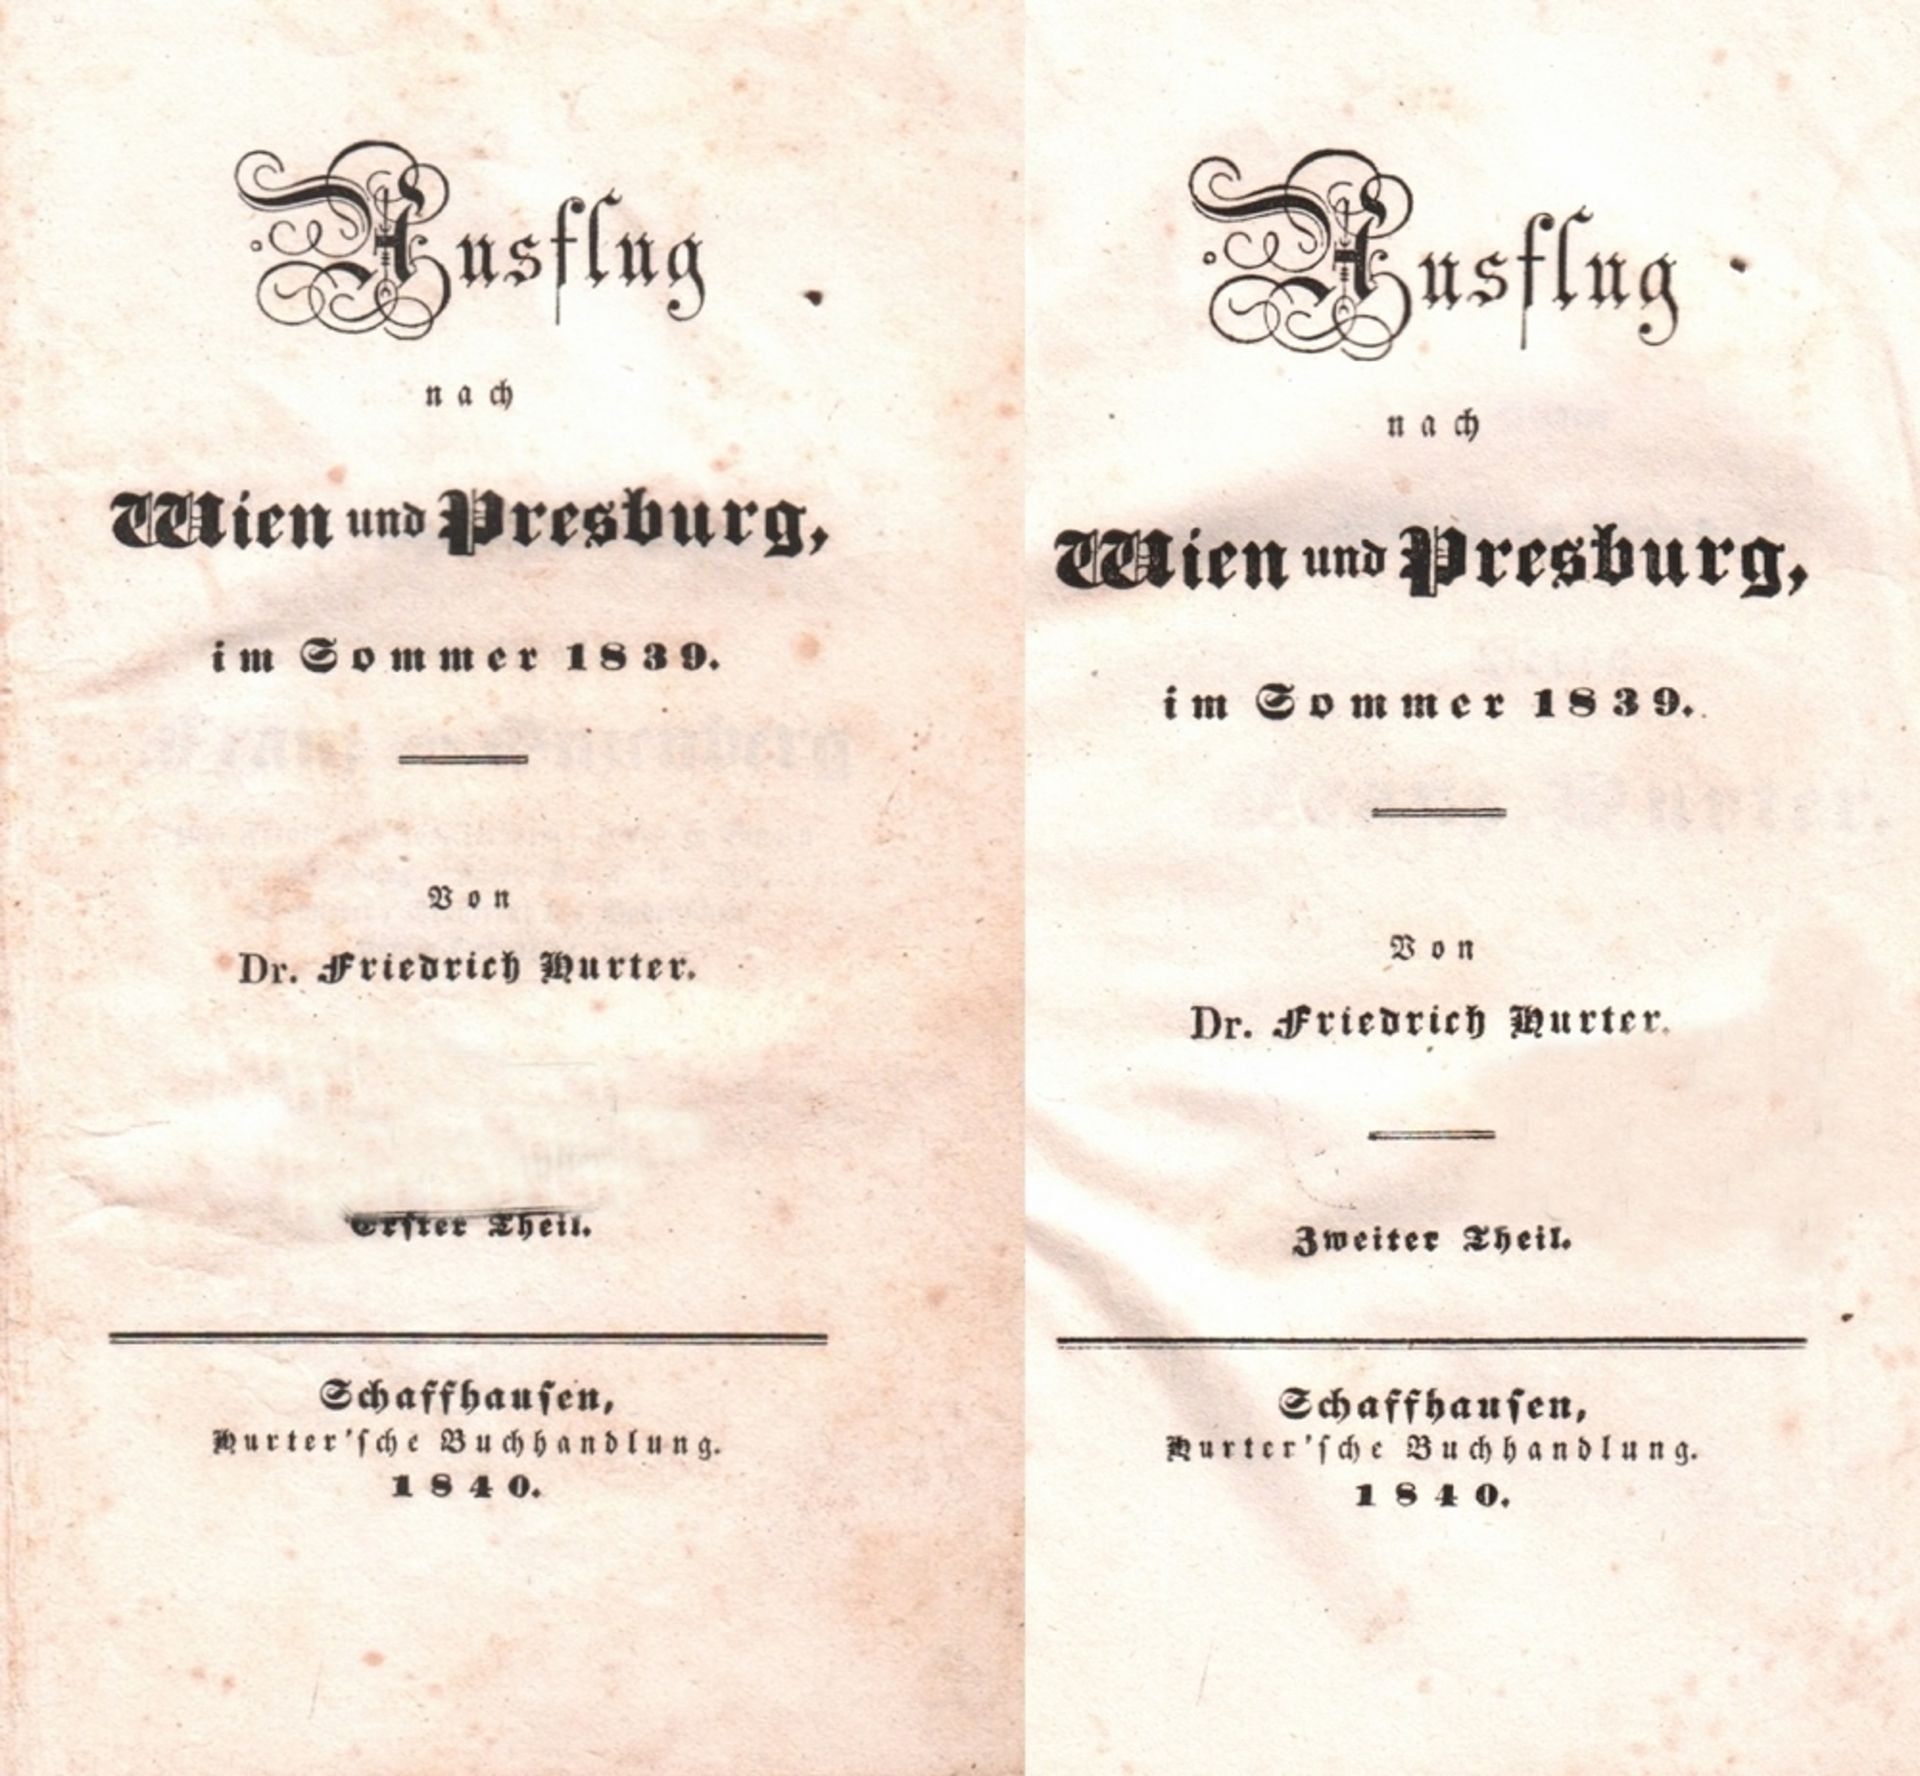 Hurter, Friedrich. Ausflug nach Wien und Presburg, im Sommer 1839. 2 Bände. Schaffhausen, Hurter,